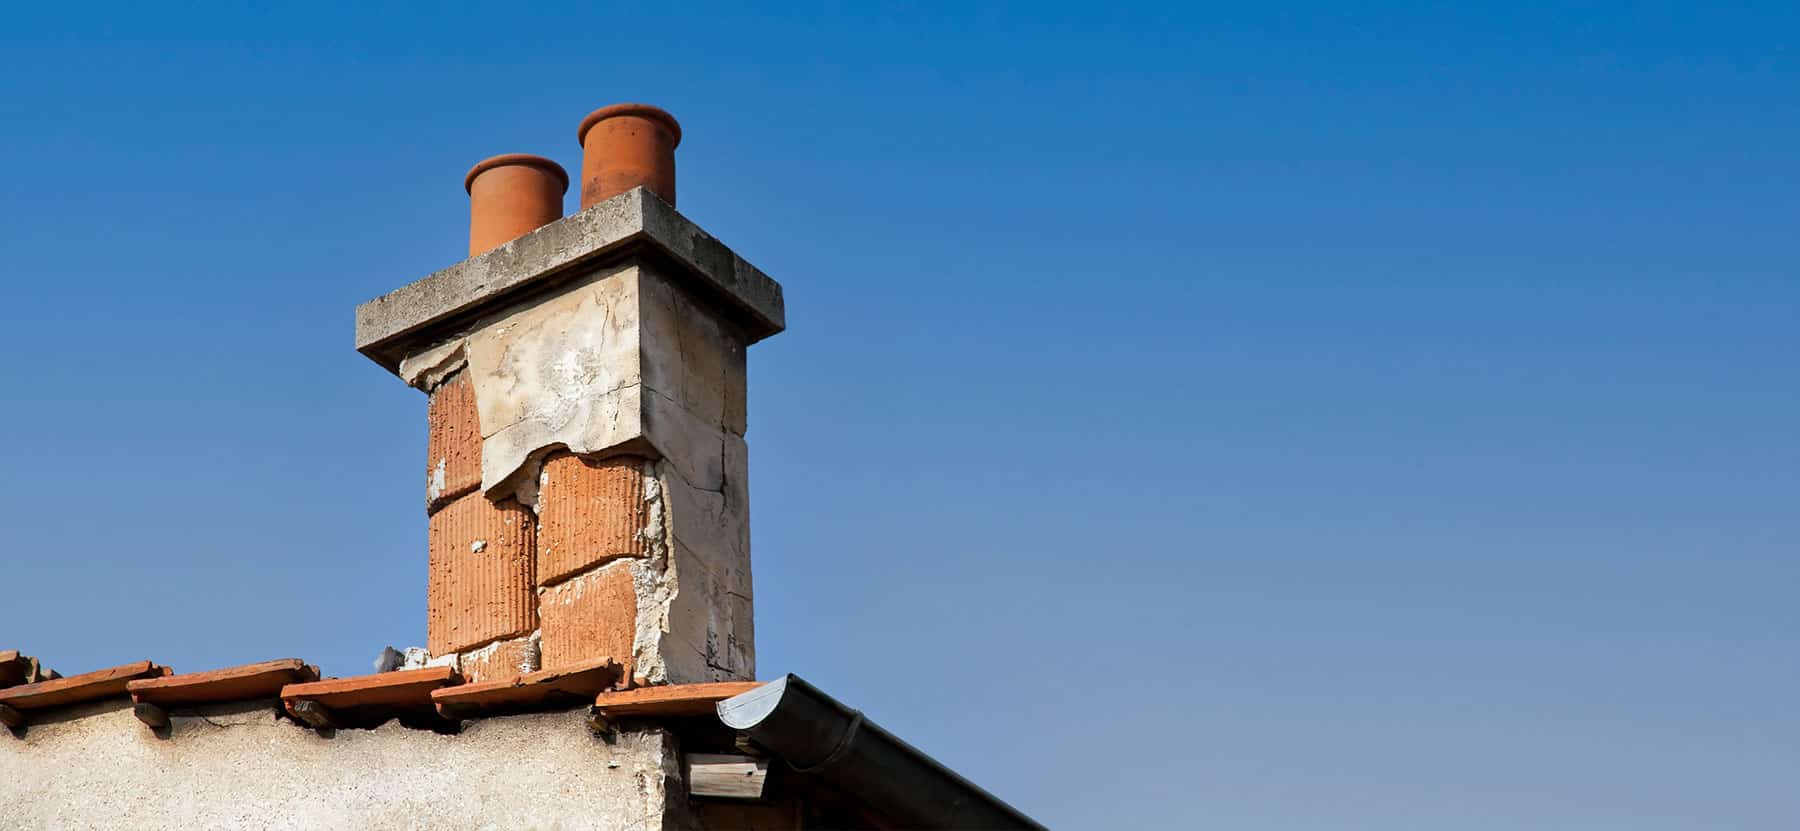 Photography d'une cheminée pour la suppression de cheminée de résidence et patrimoine de france